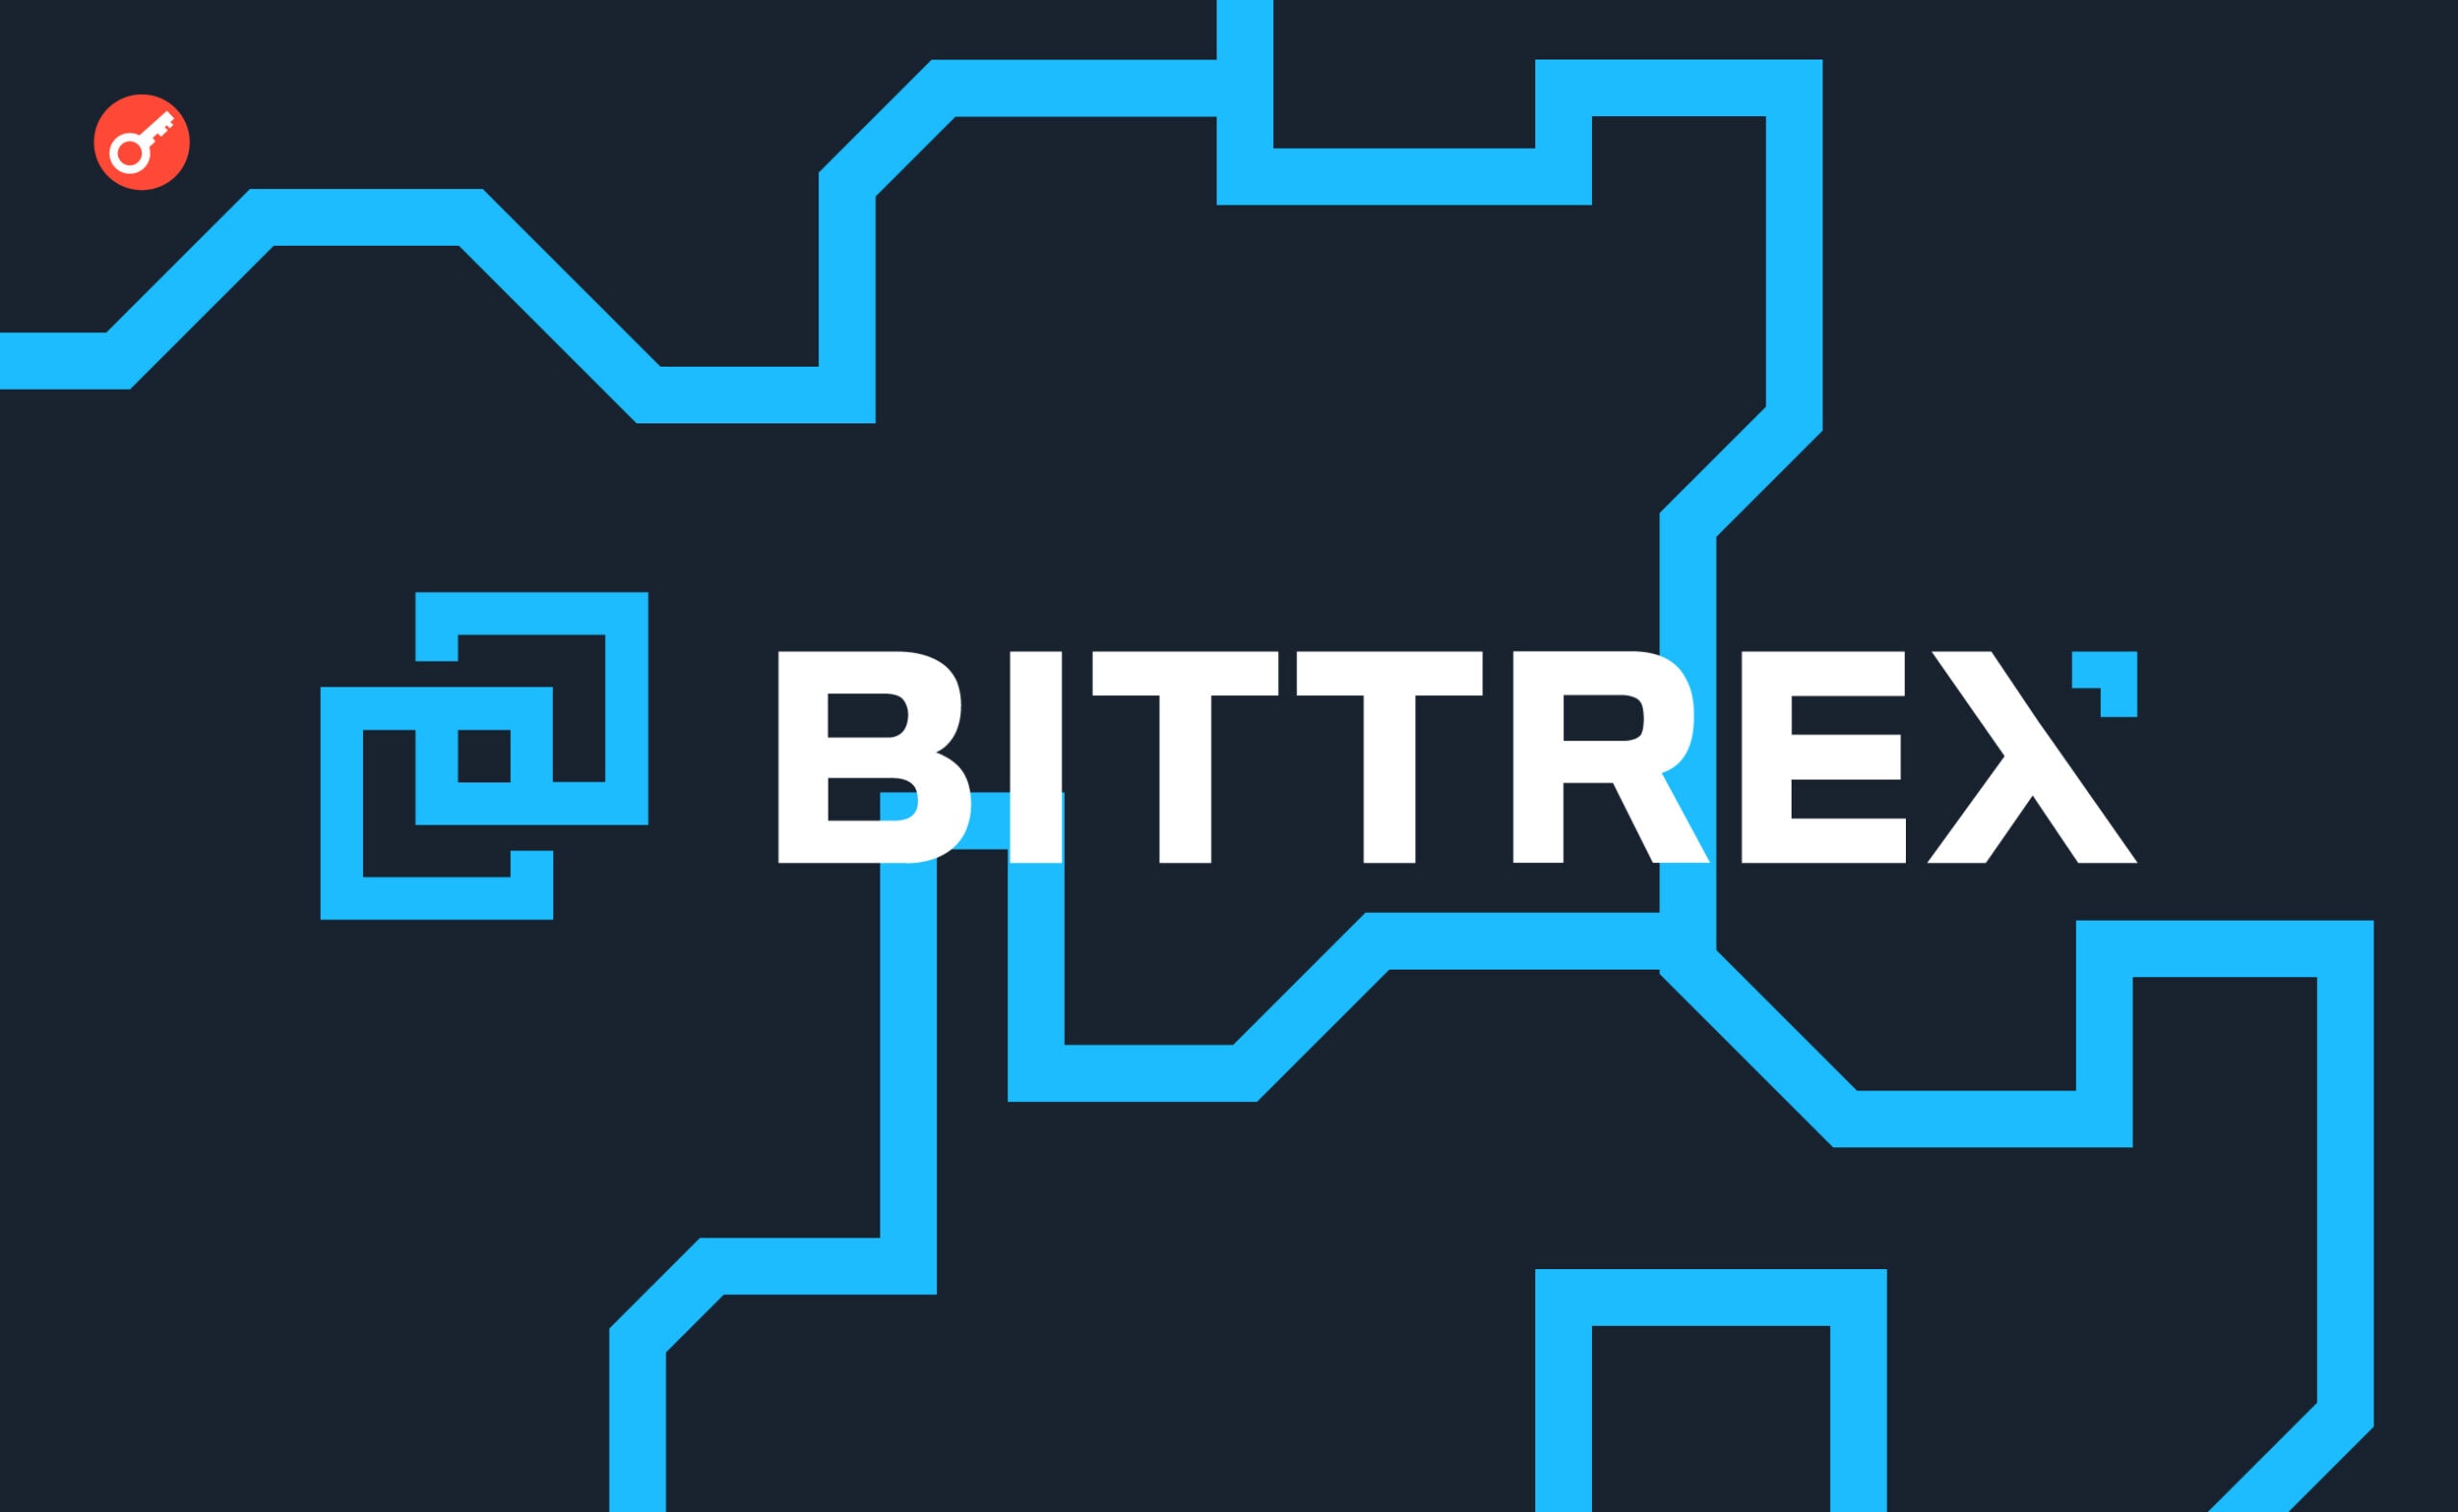 Bittrex отримає в кредит 250 BTC для старту процедури банкрутства. Головний колаж новини.